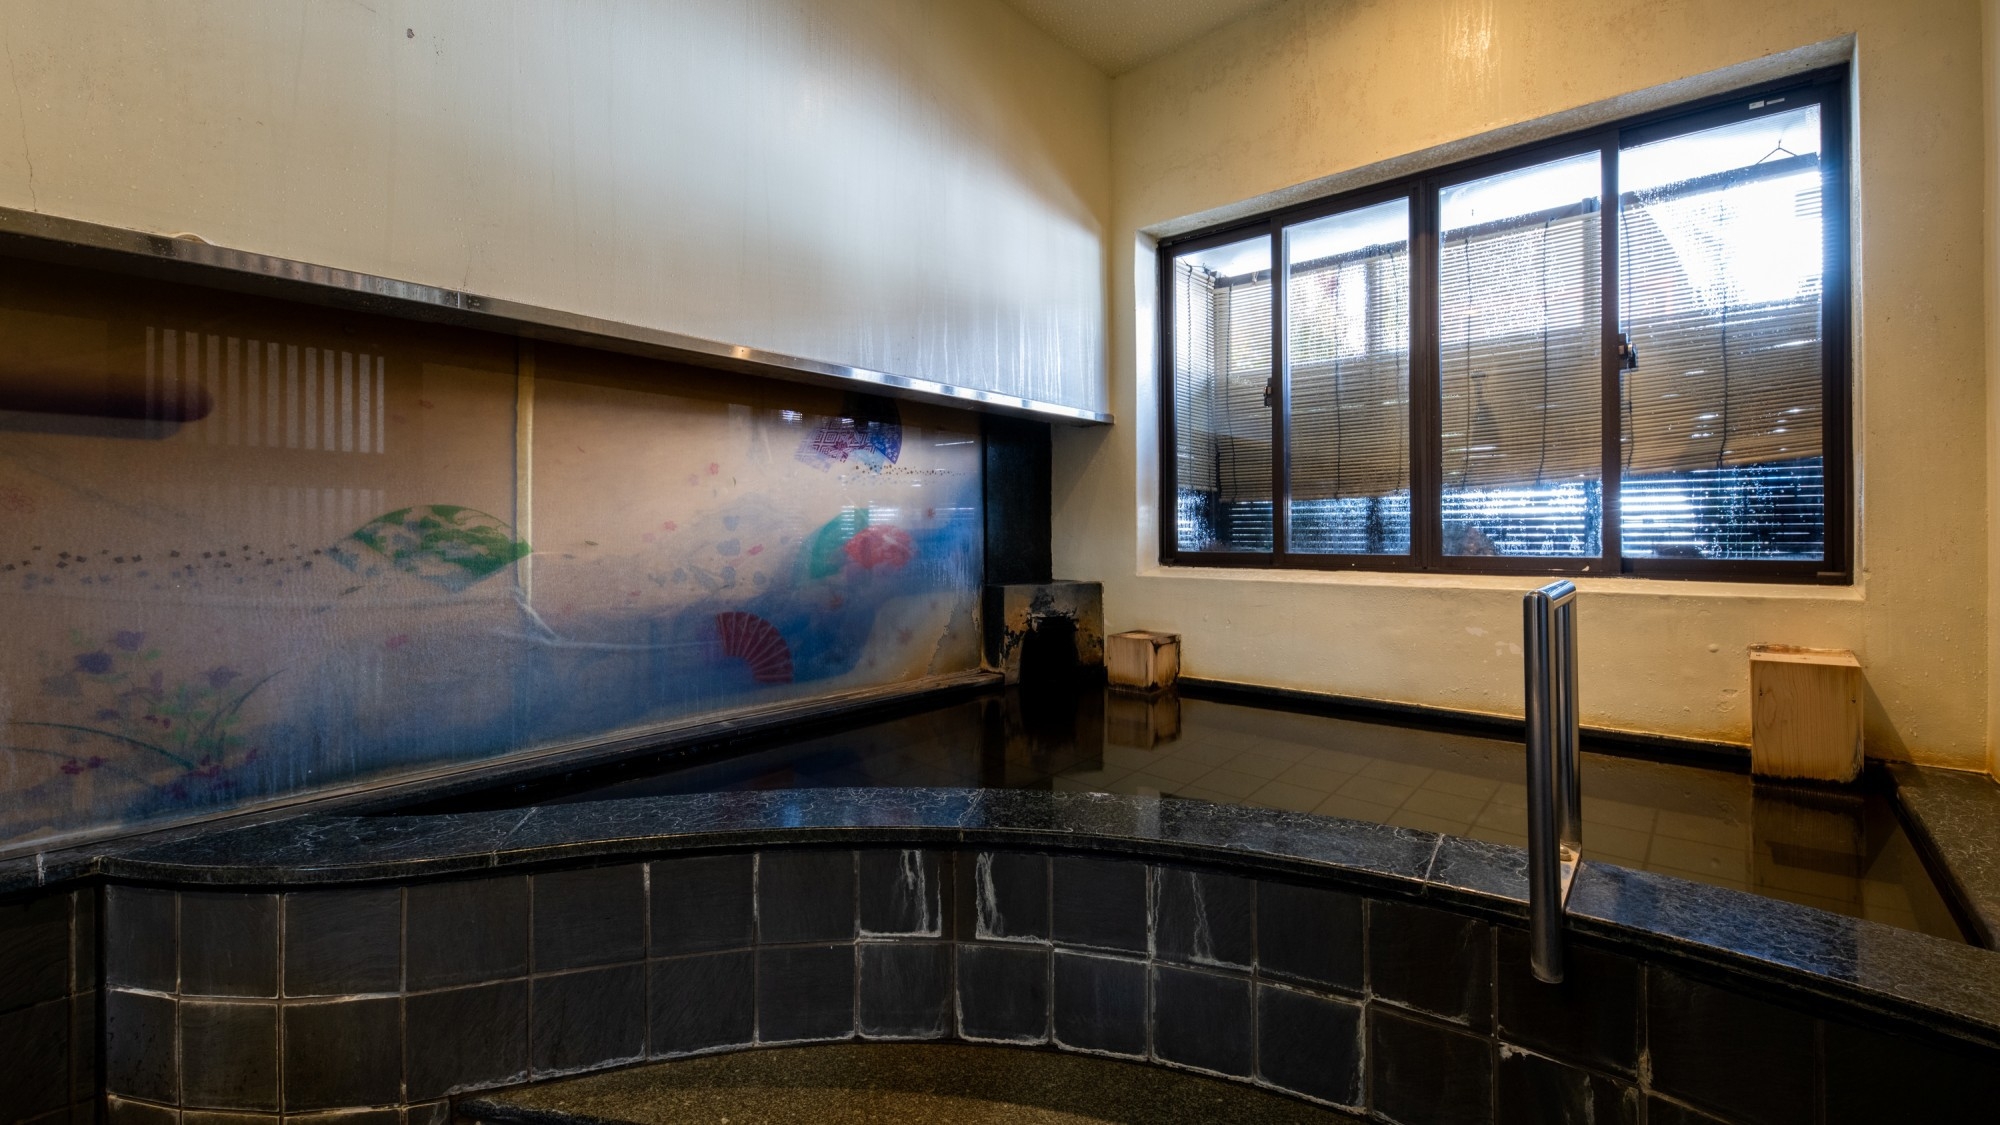 【素泊まり】新神戸駅から徒歩5分の隠れ家宿で 天然温泉「シンプルステイプラン」ビジネス・受験にも